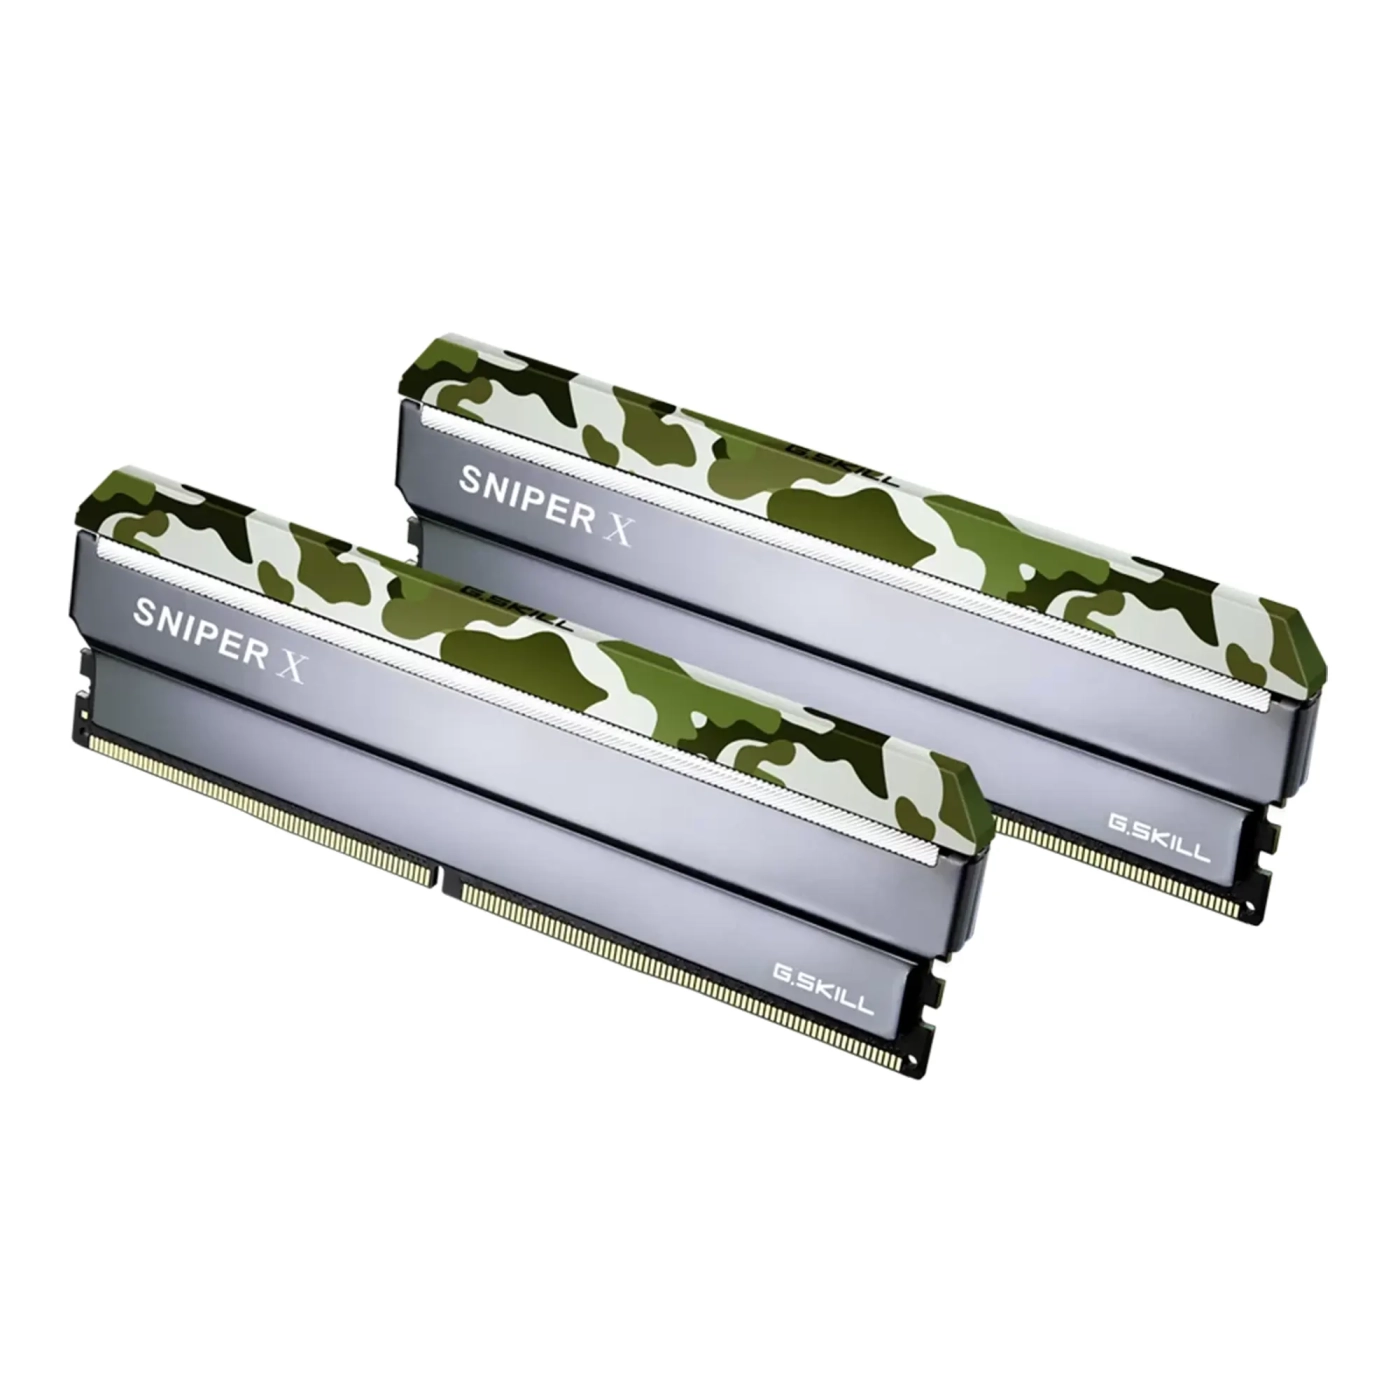 Купить Модуль памяти G.Skill Sniper X Classic Camo DDR4-3200 32GB (2x16GB) CL16-18-18-38 1.35V - фото 1